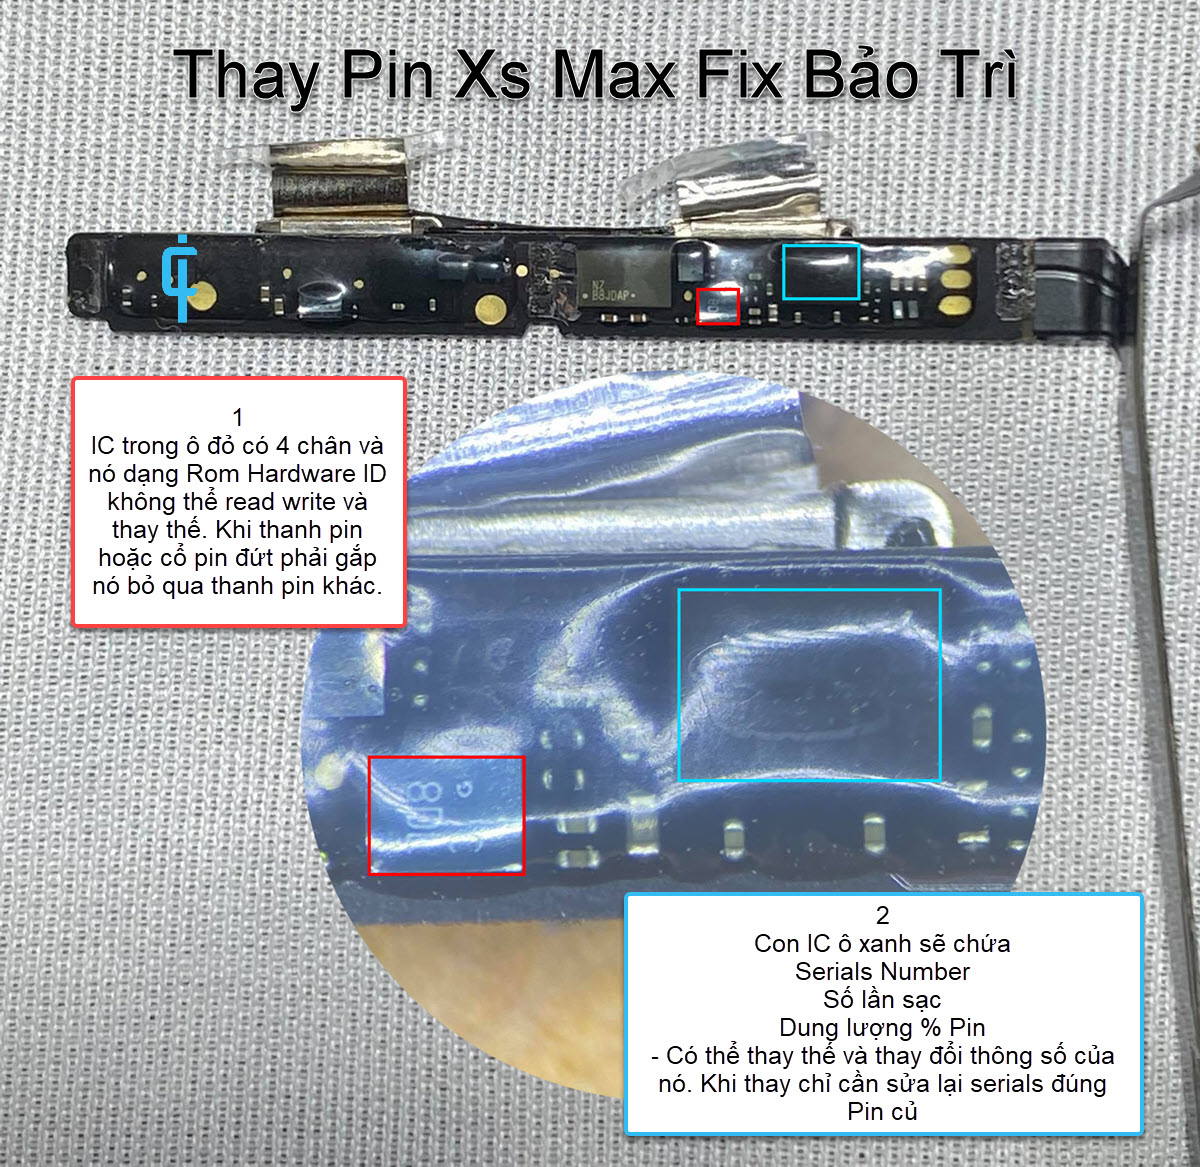 Mạch Pin Xs Max